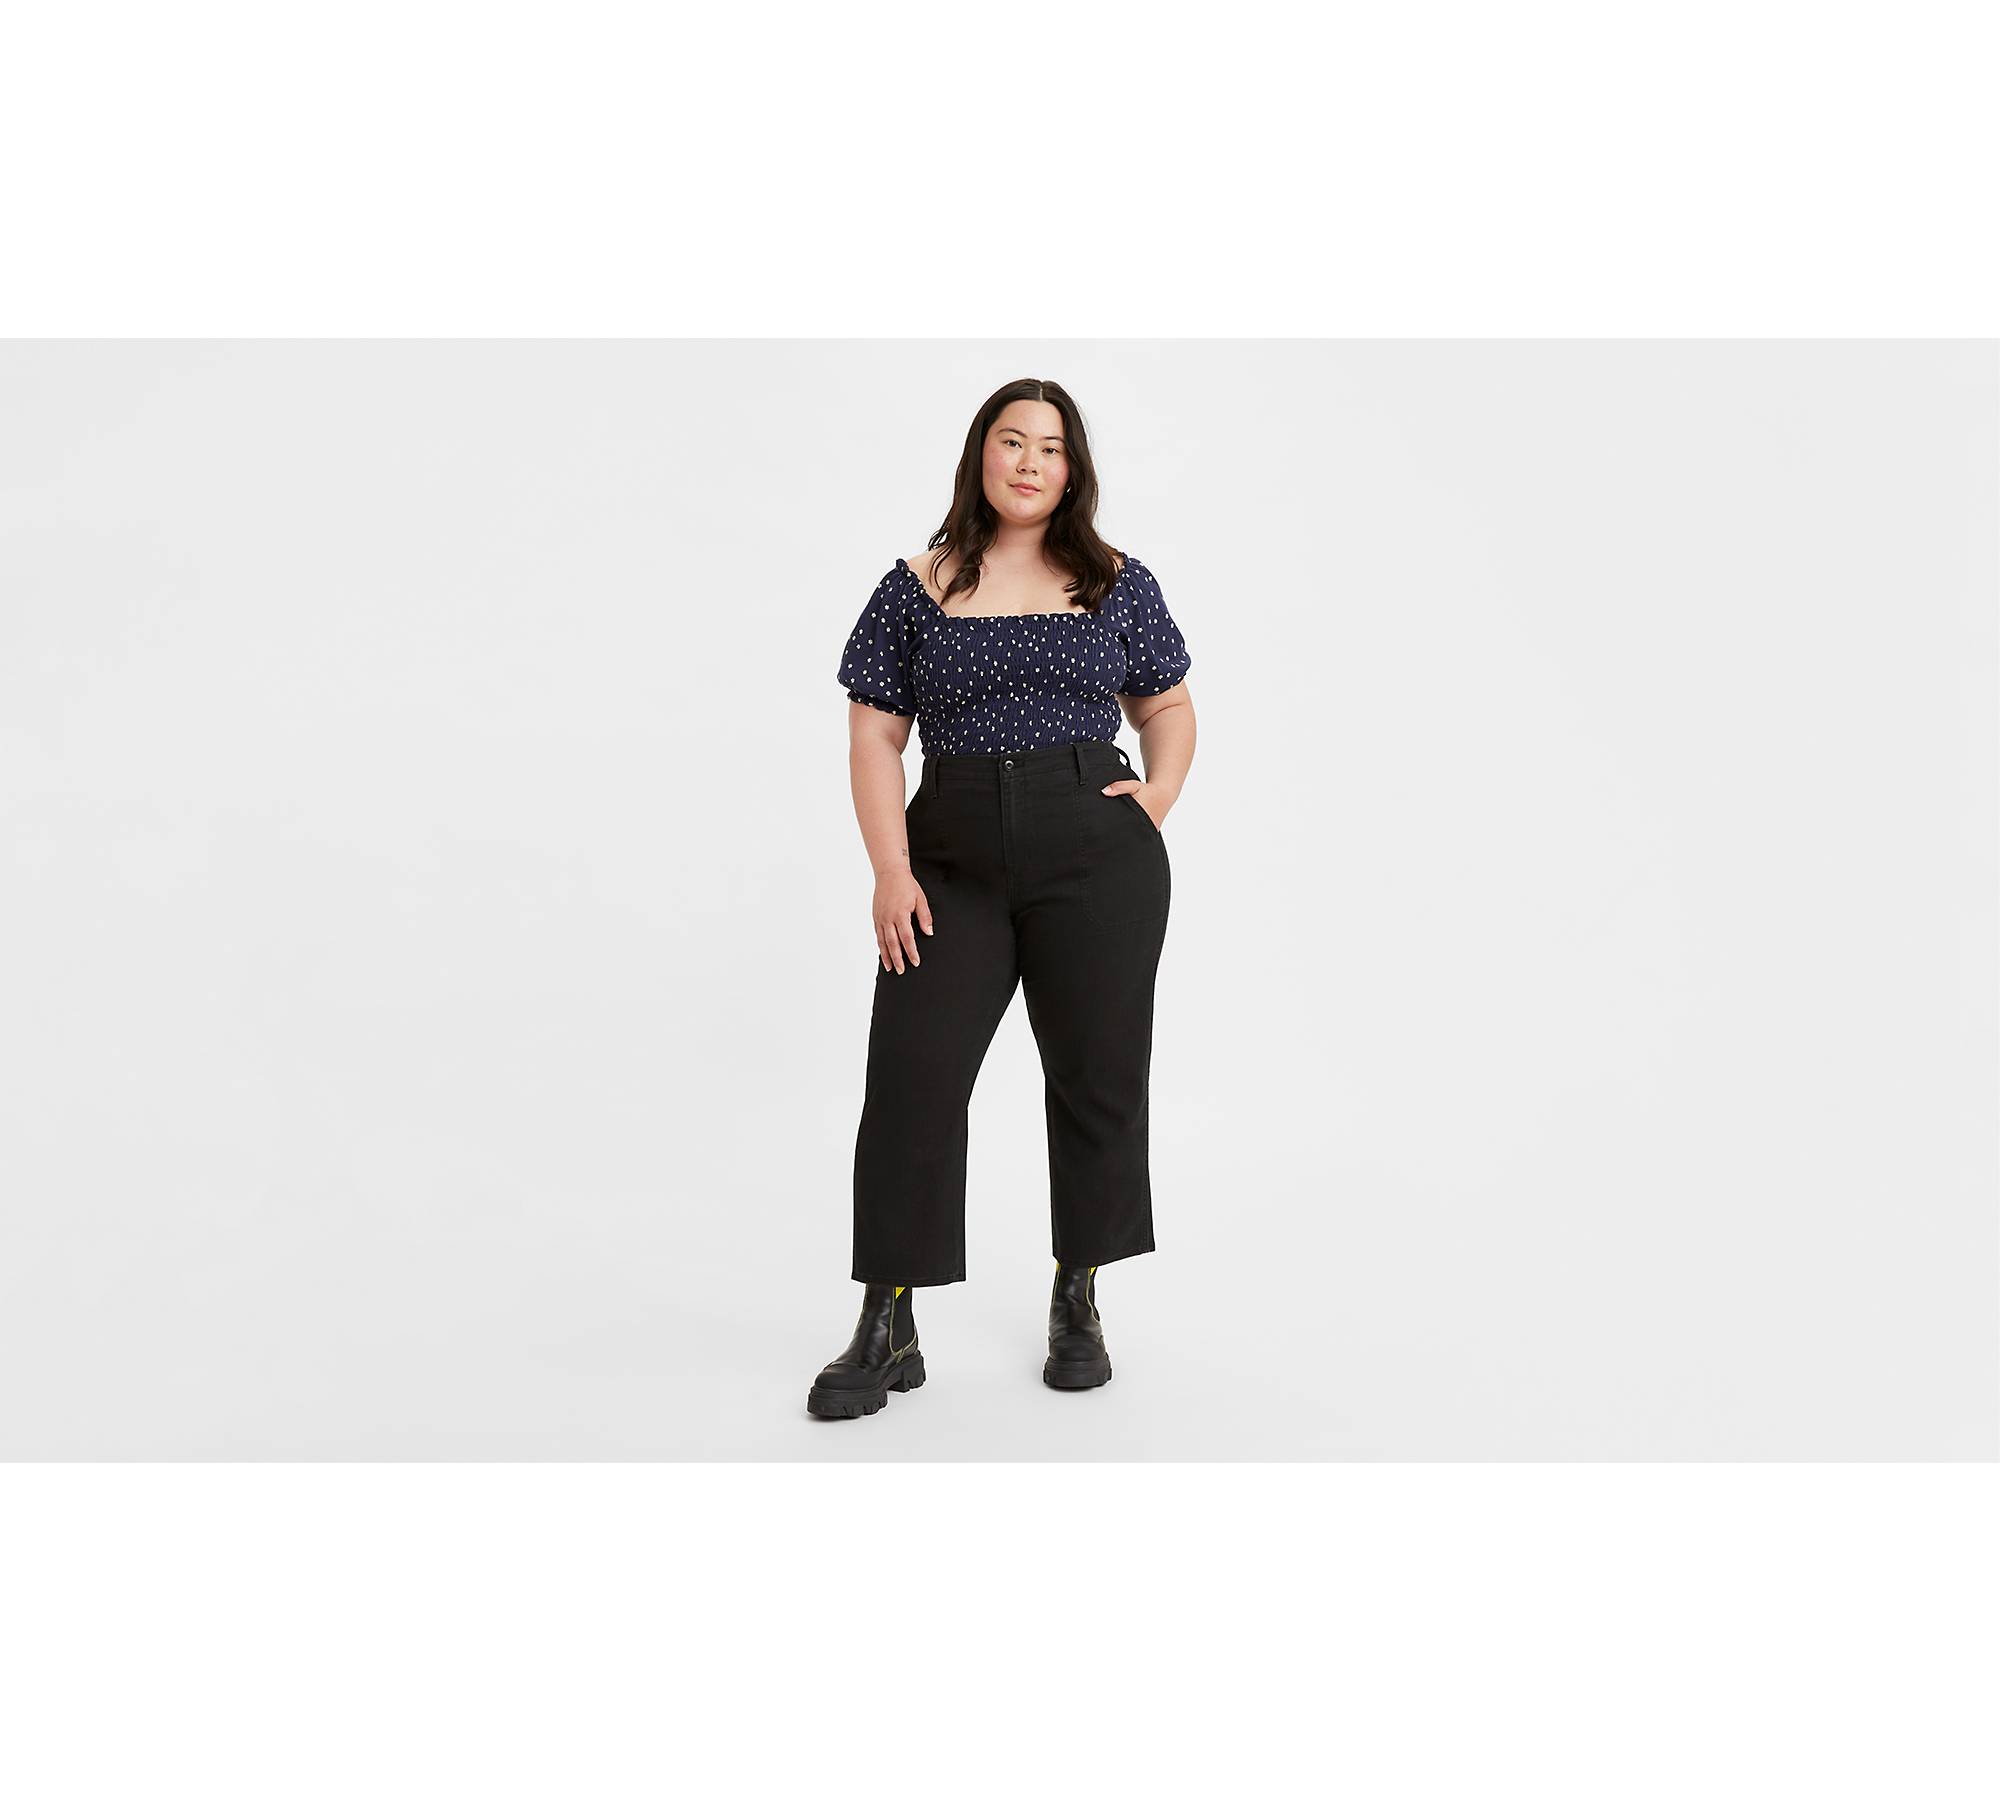  Women's Pants - XL / Women's Pants / Women's Clothing